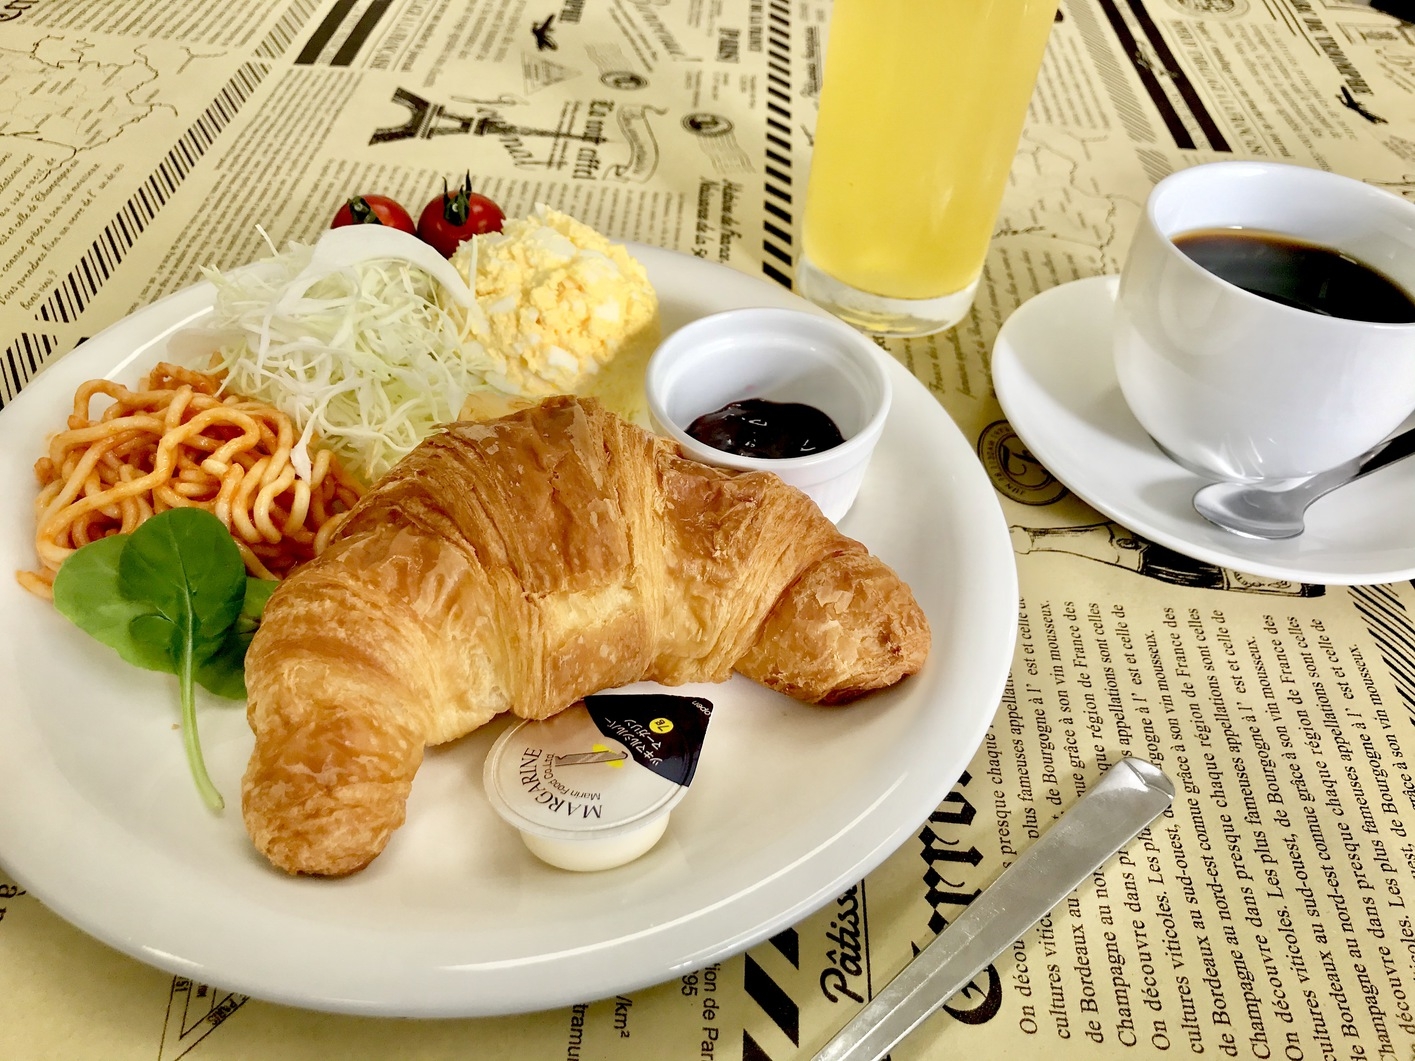 ☆輝く美肌へ☆アロマエッセゴールドプラン・ツインルーム朝食付き(軽食)